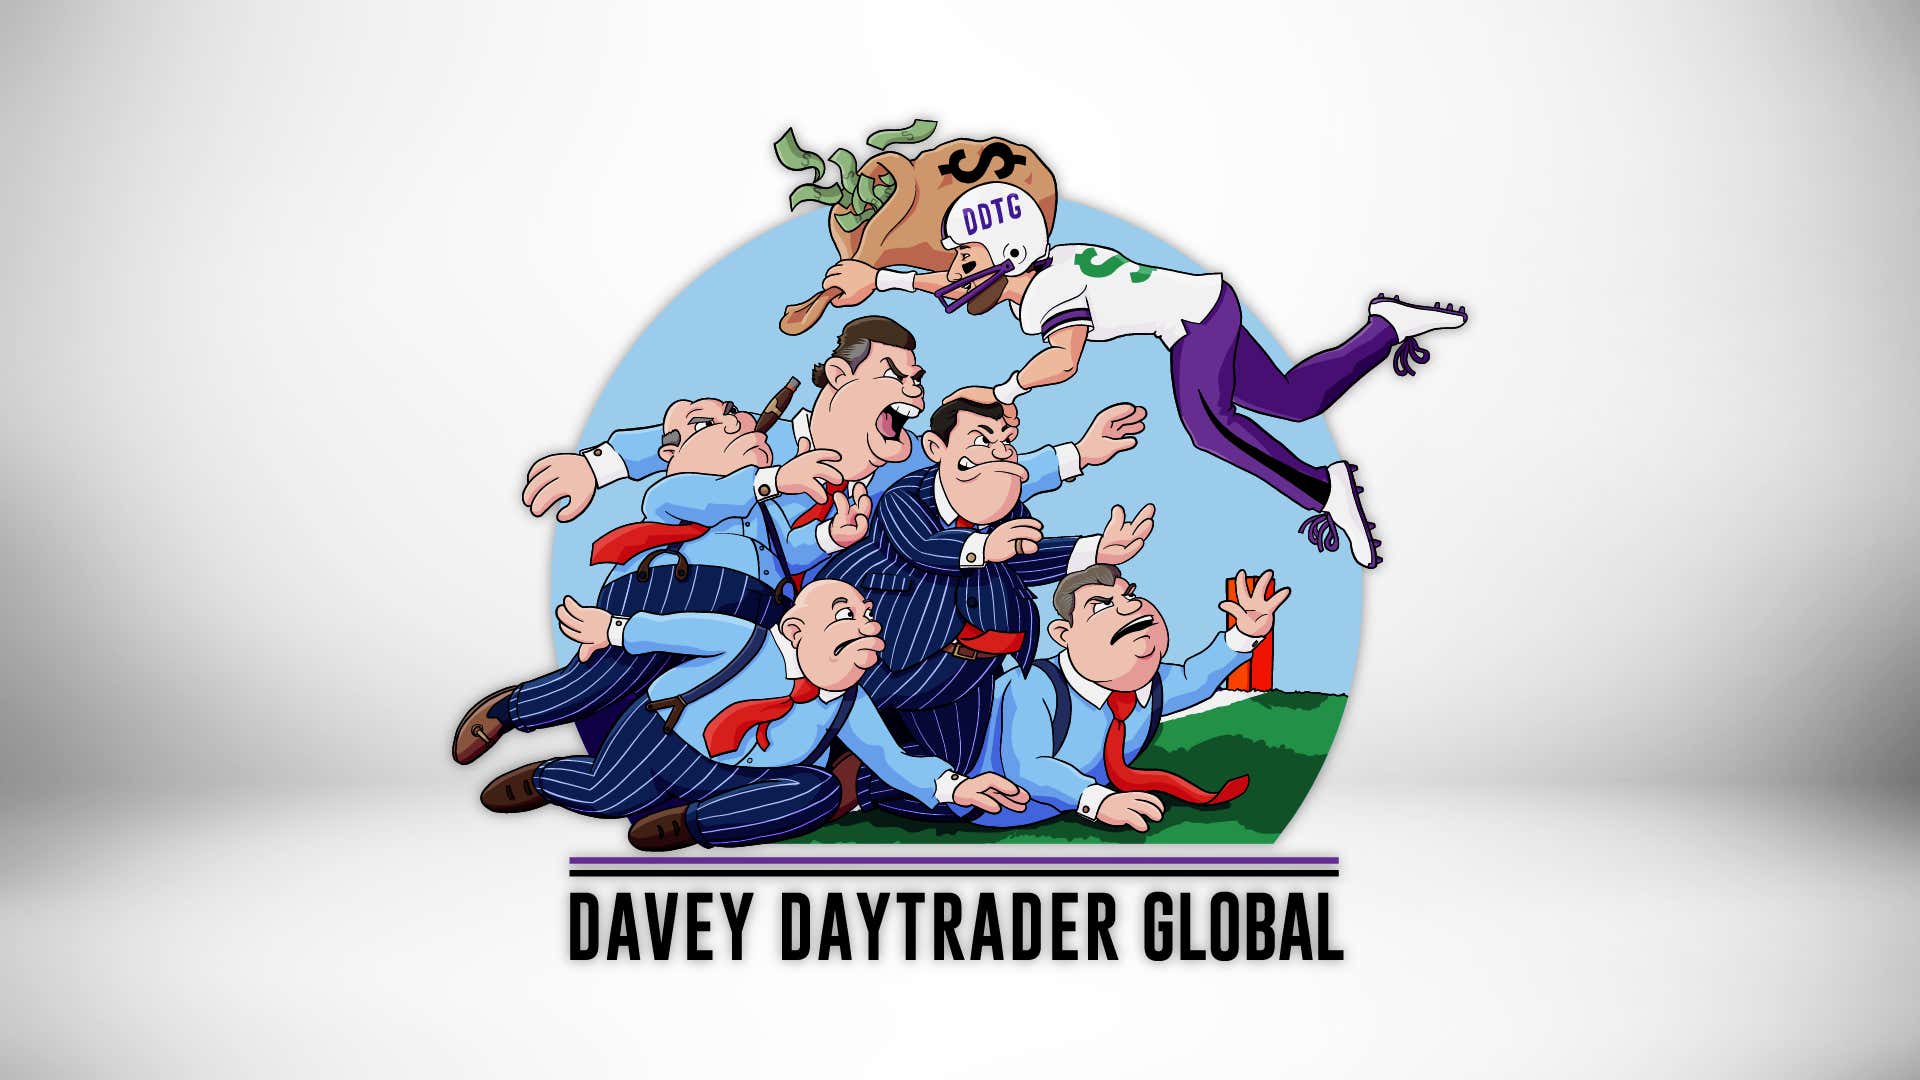 Davey Day Trader – September 8, 2020